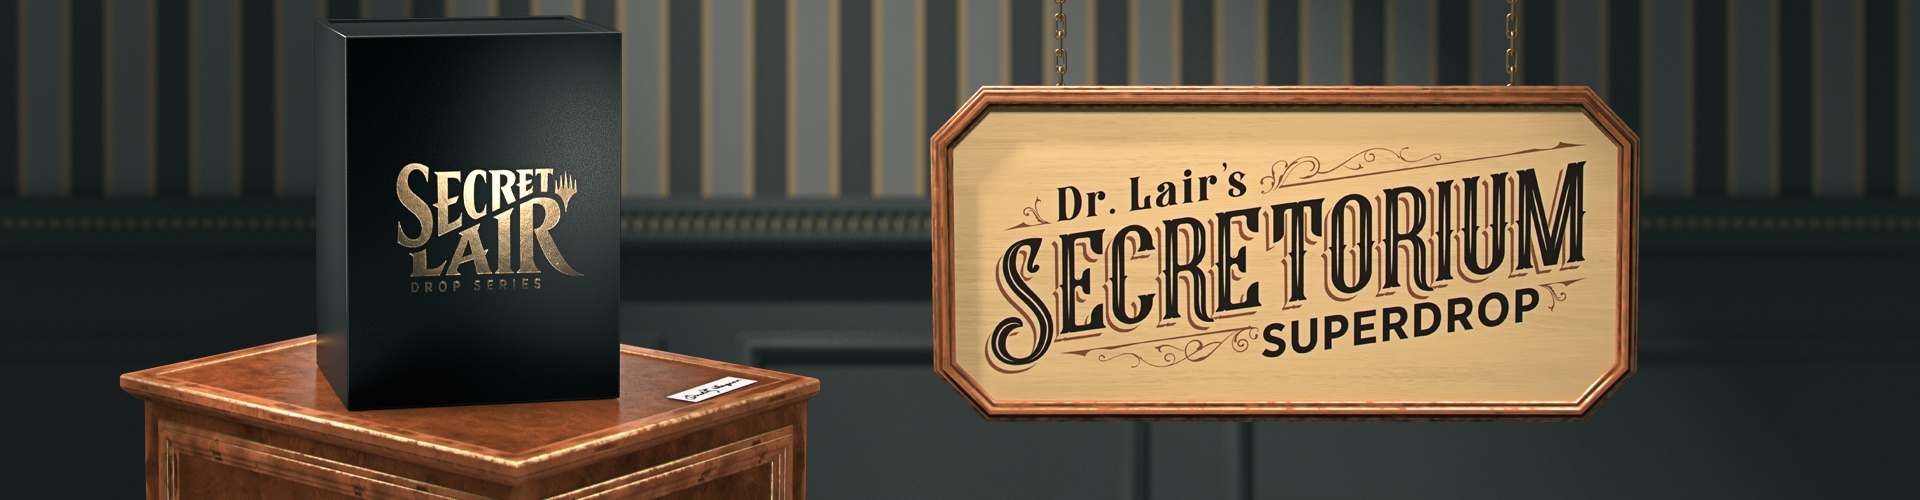 Capacity : Dr. Lair's Secretorium Superdrop